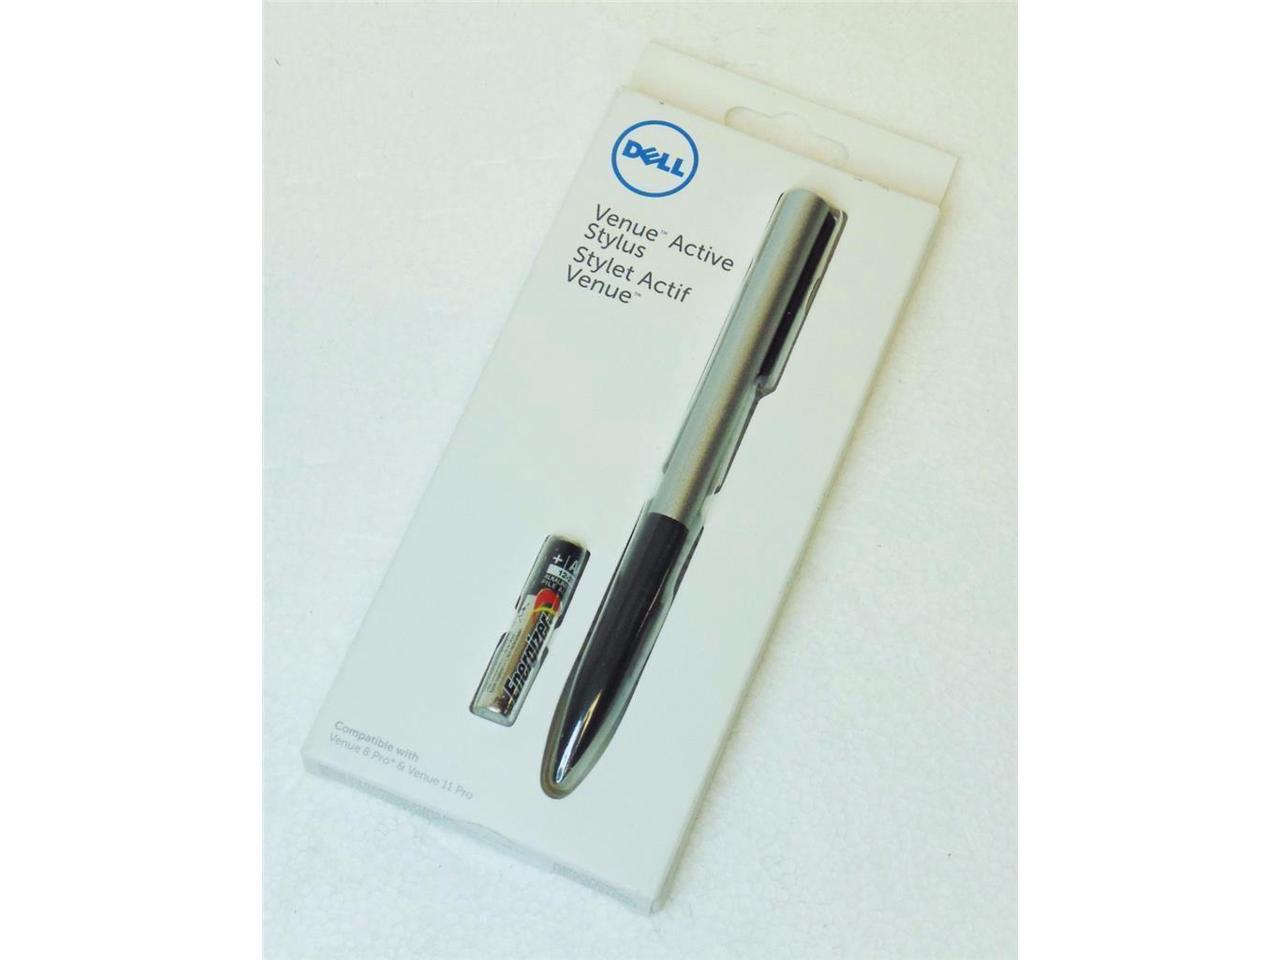 New Dell Rtmnd Active Stylus Pen For Venue 8 Pro And Venue 11 Pro Newegg Com